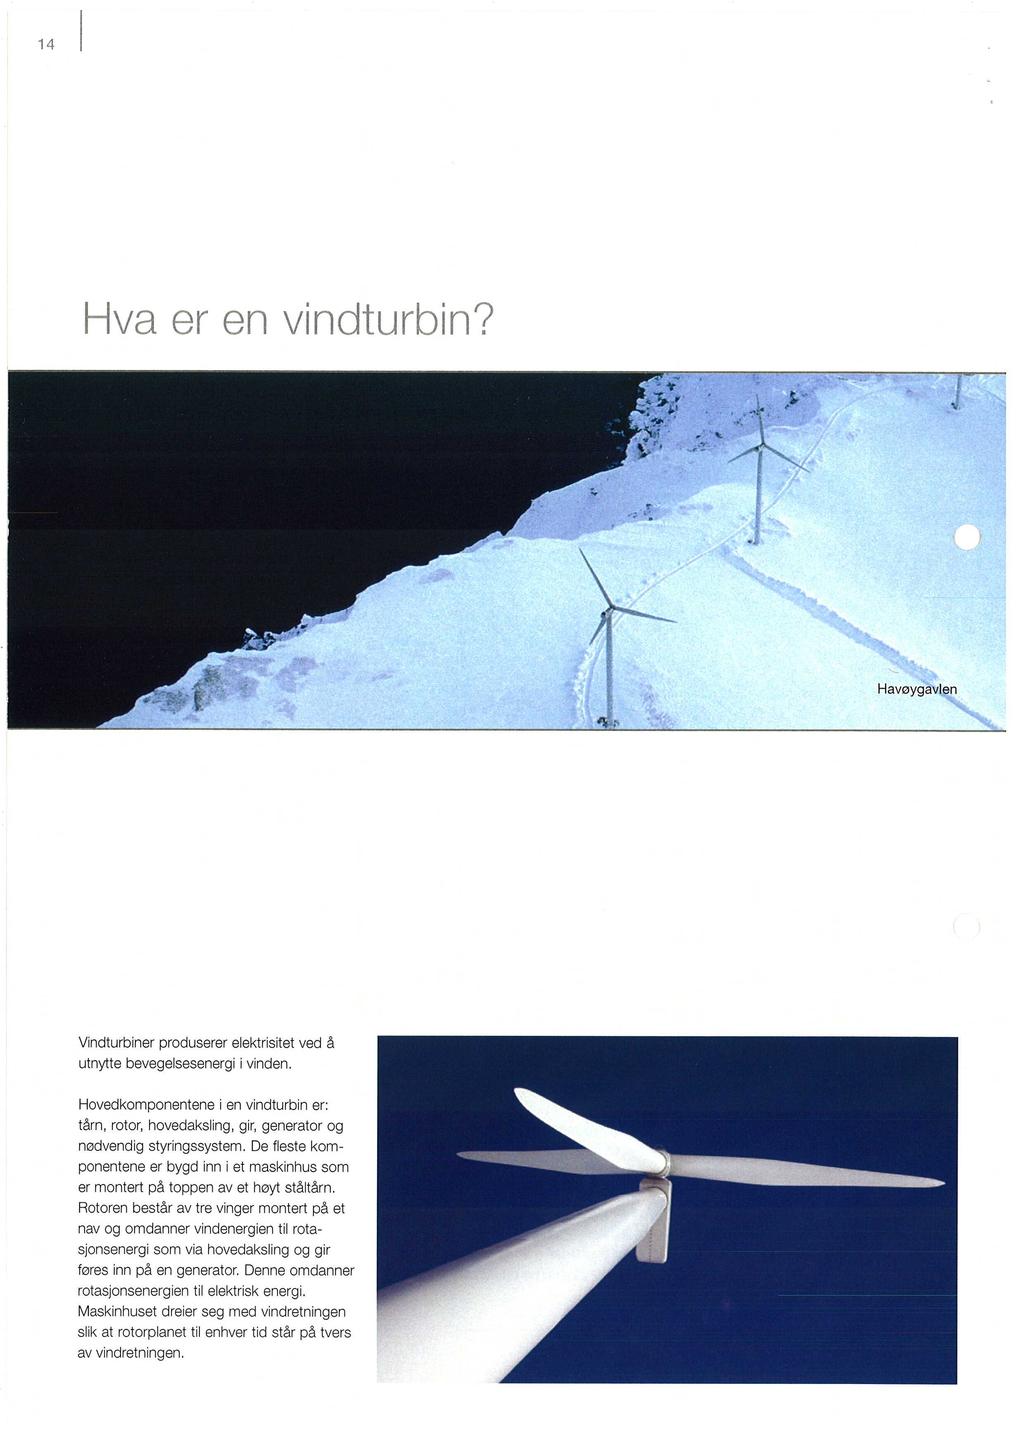 Havøygavlen Vindturbiner produserer elektrisitet ved å utnytte bevegelsesenergi vinden. Hovedkomponentene i en vindturbin er: tårn, rotor, hovedaksling, gir, generator og nødvendig styringssystem.